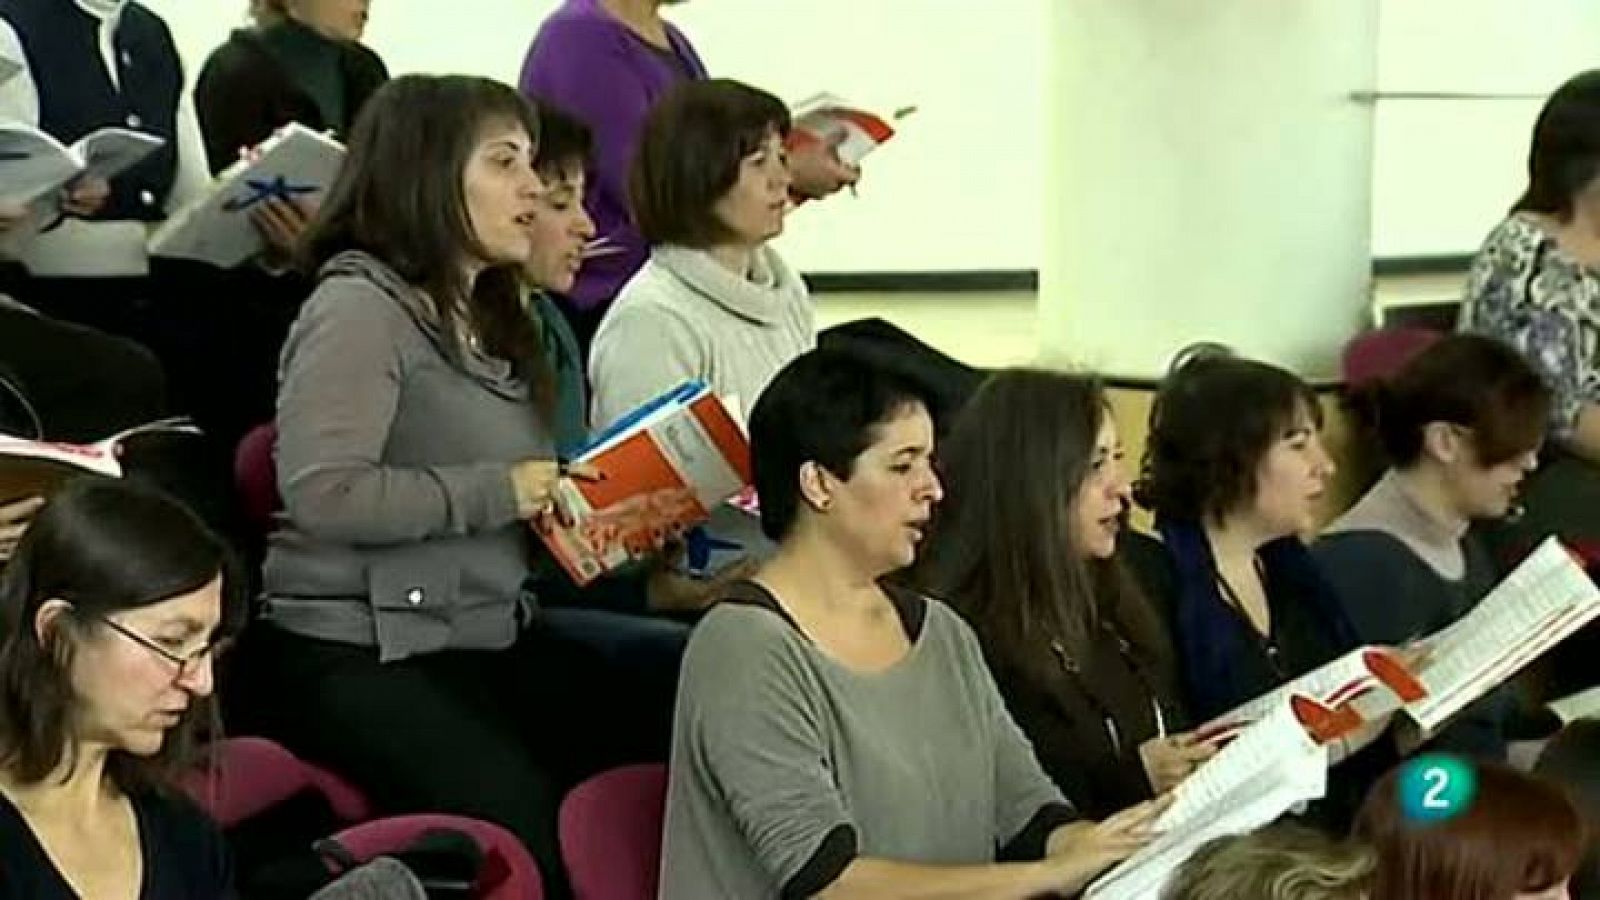 Atención obras: Un grupo de aficionados interpreta 'El Mesías' | RTVE Play